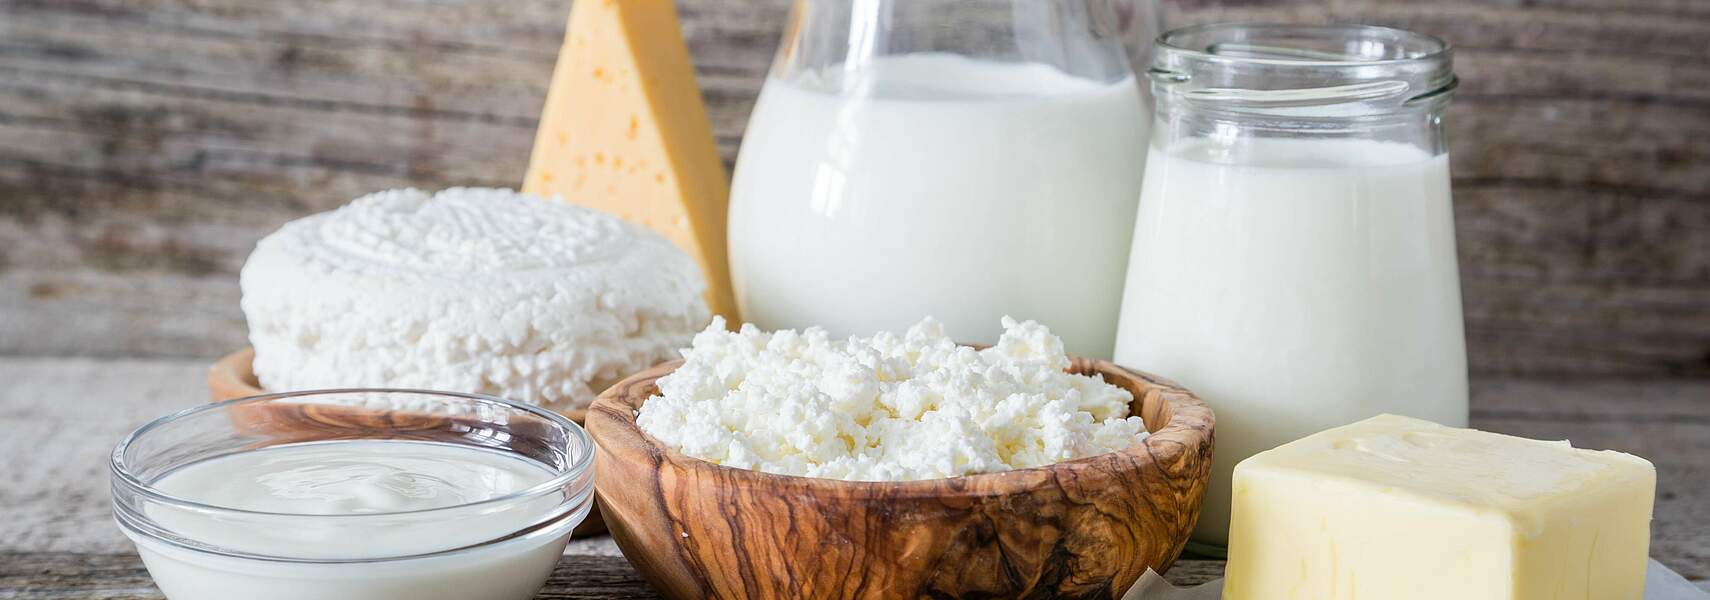 Sinkende Milchpreise widersprechen aktueller Marktlage